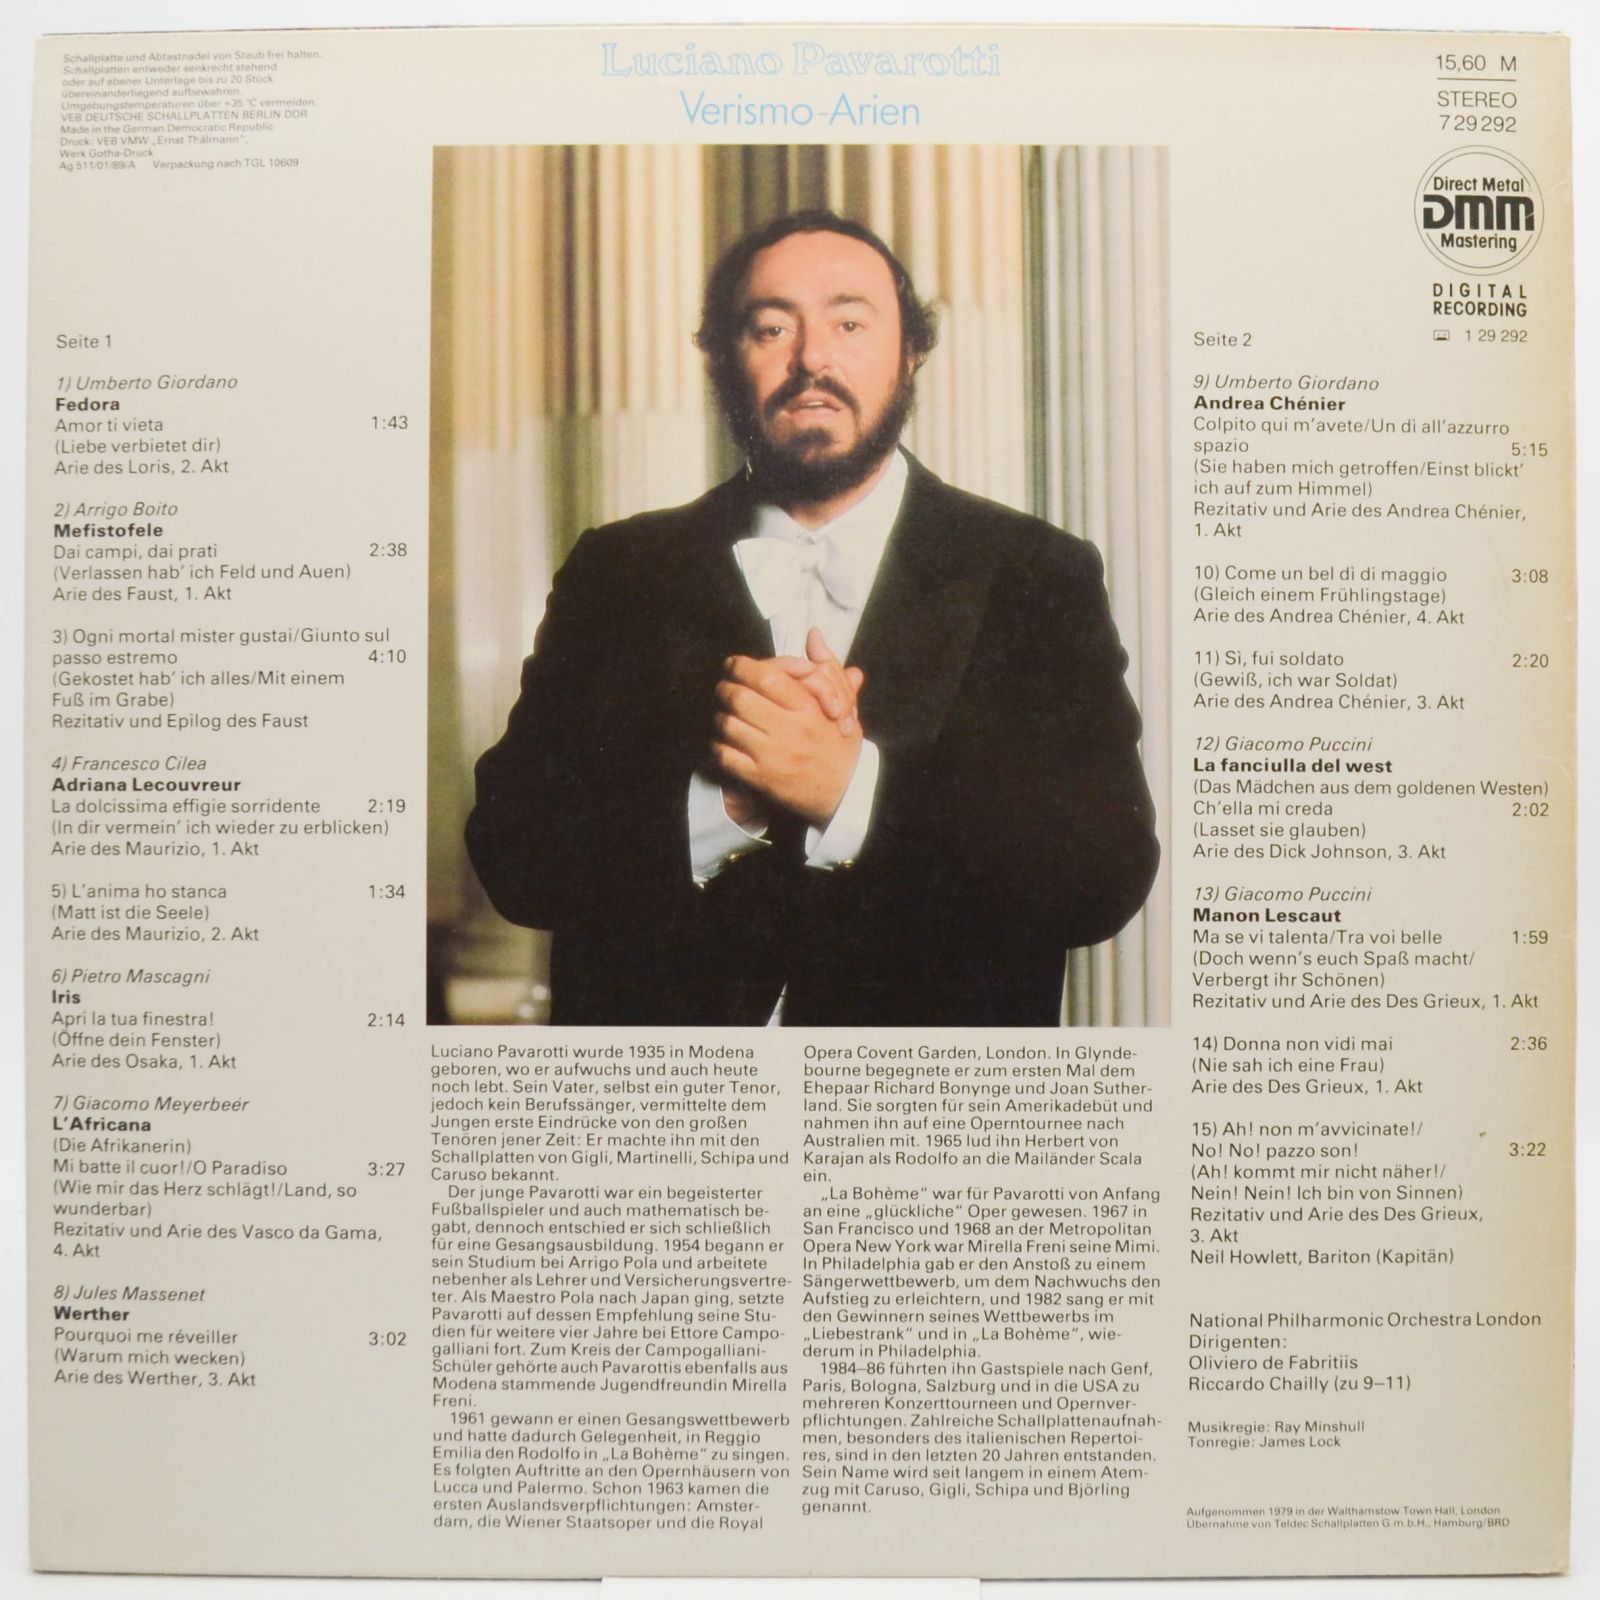 Luciano Pavarotti — Verismo-Arien, 1989